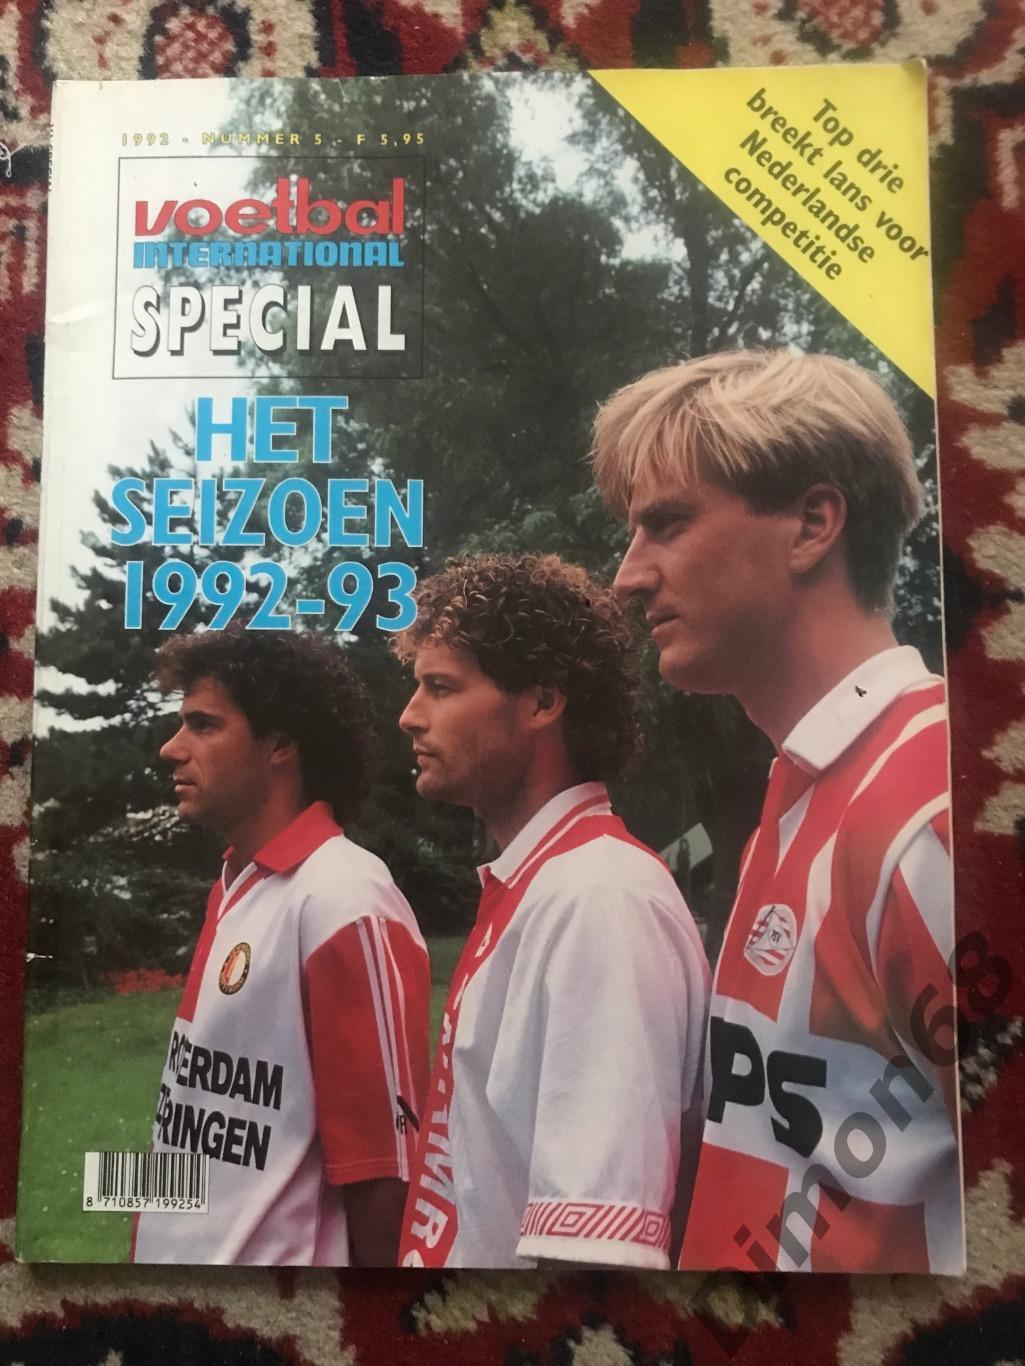 Voetbal спецвыпуск постеры команд А4 чемпионат голландии сезон 1992/93г